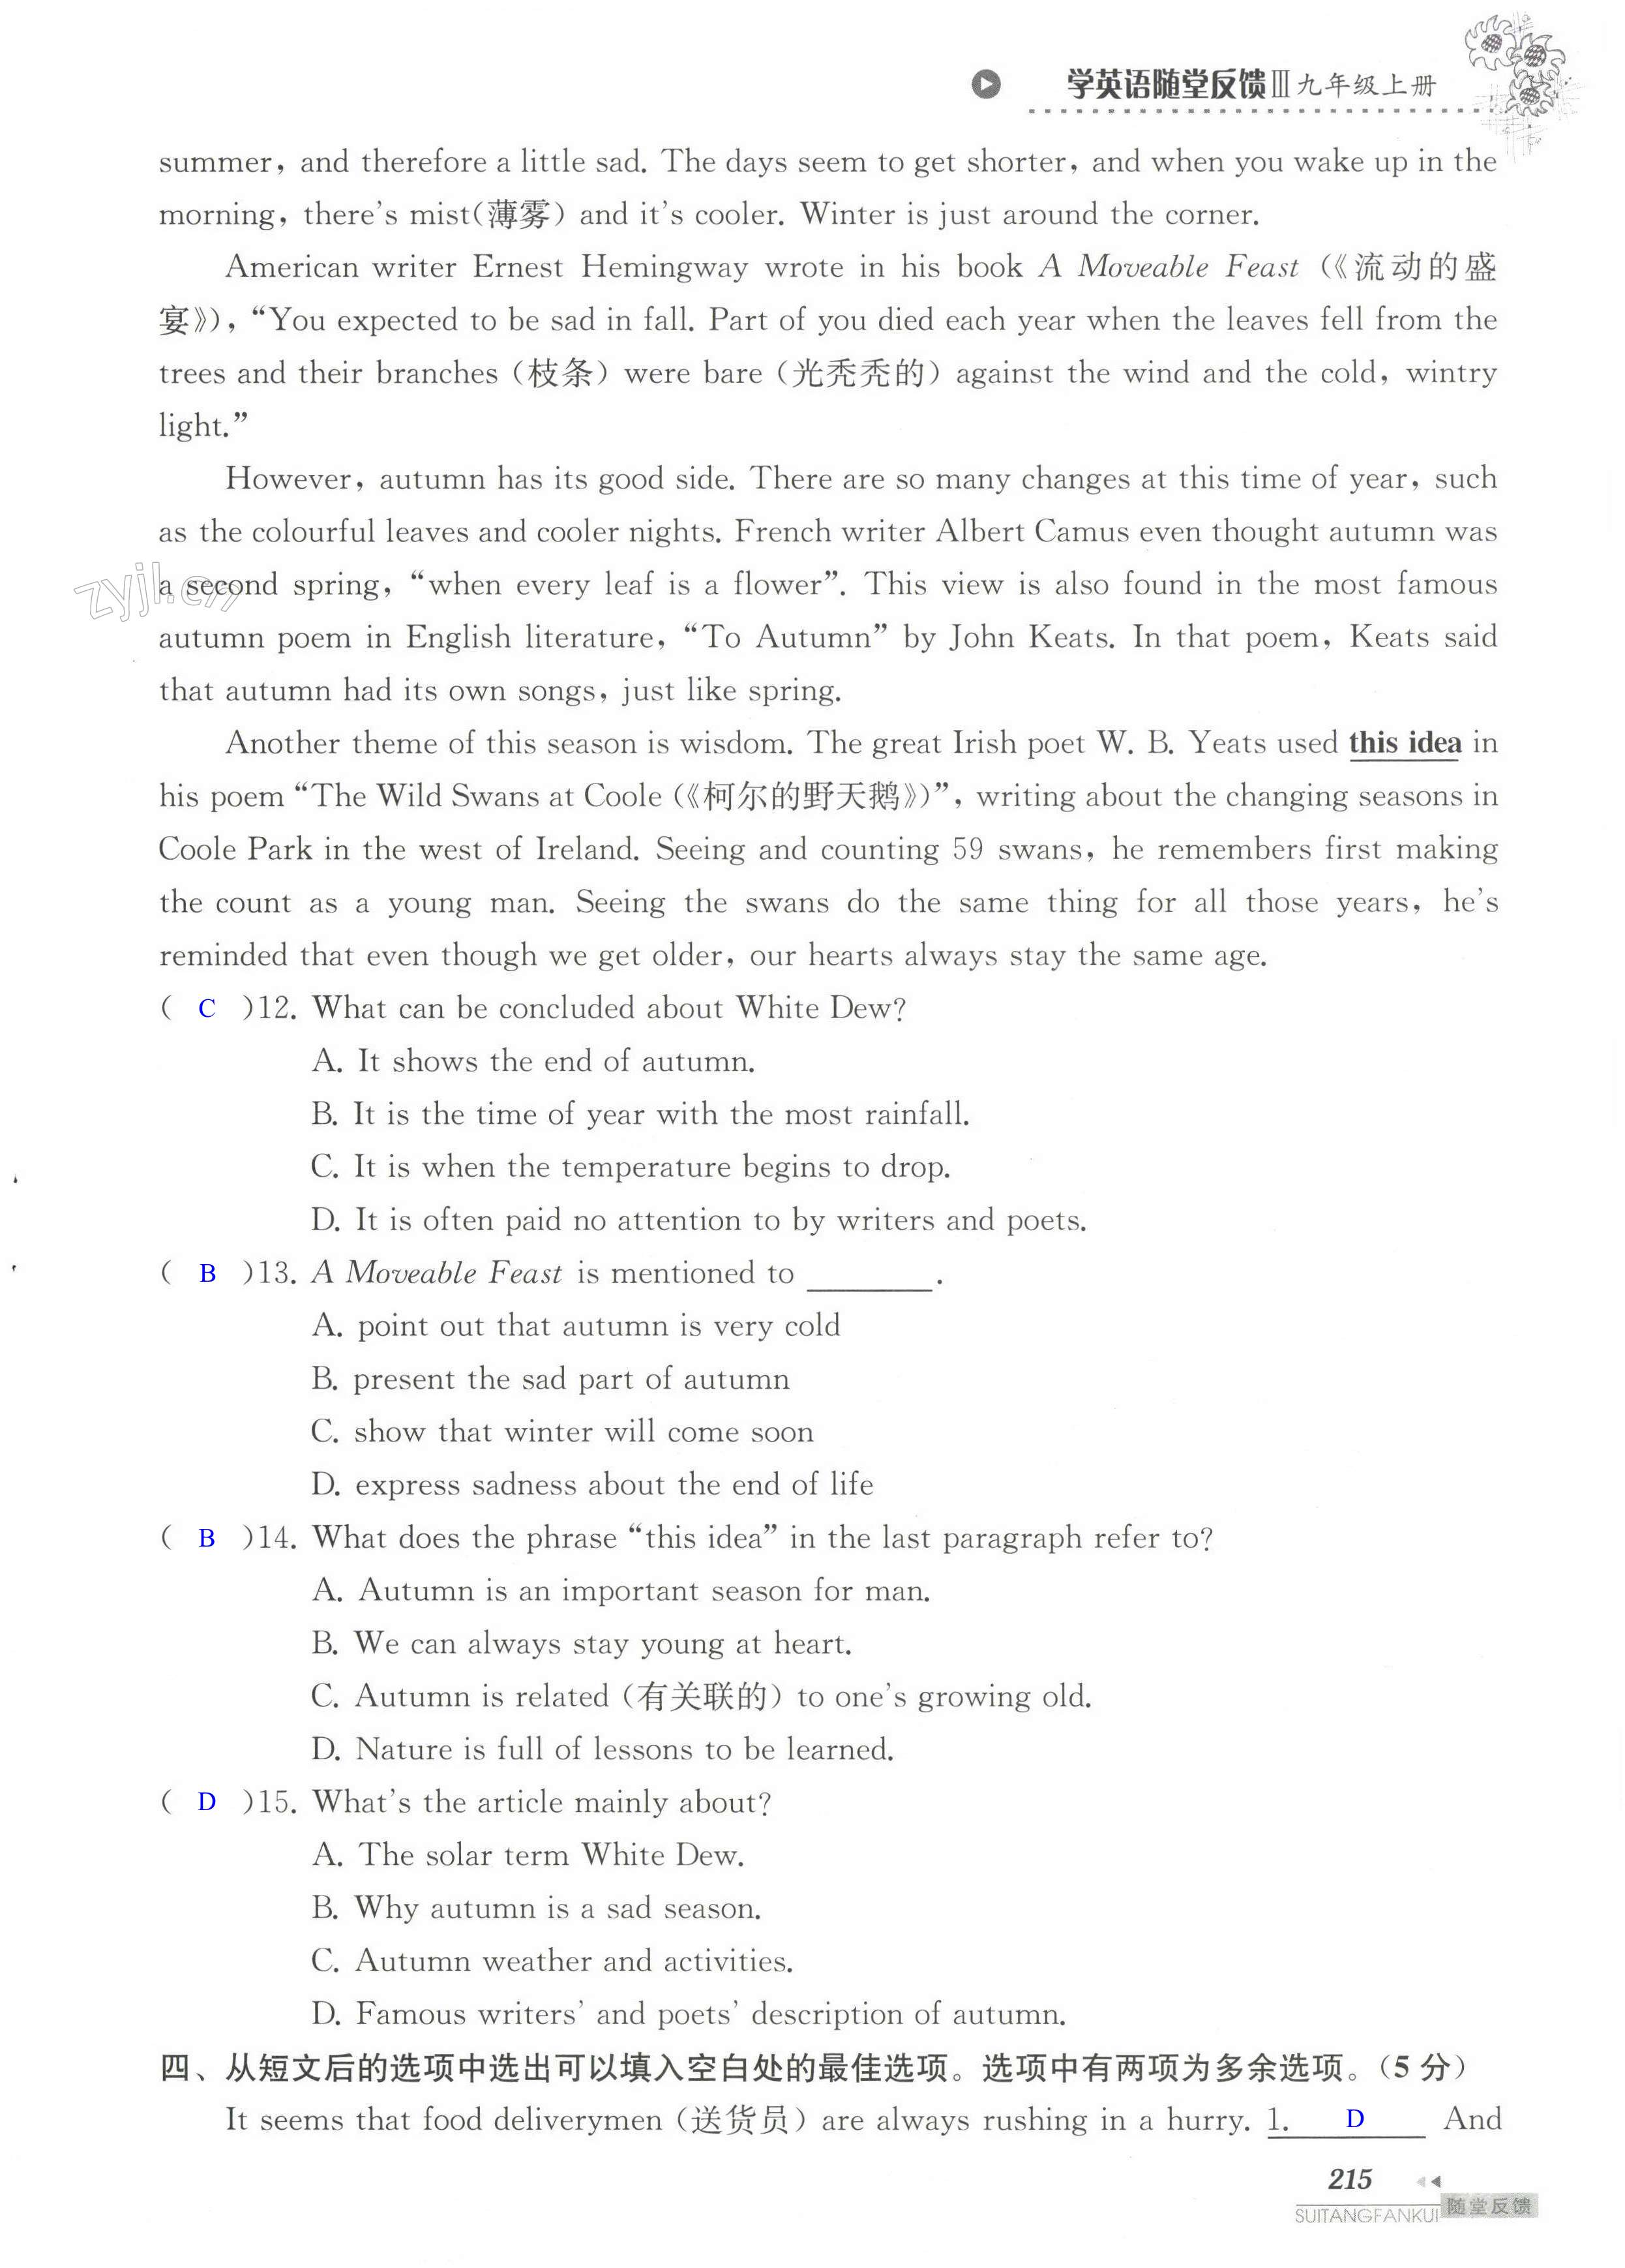 单元综合测试卷 Test for Unit 8 of 9A - 第215页